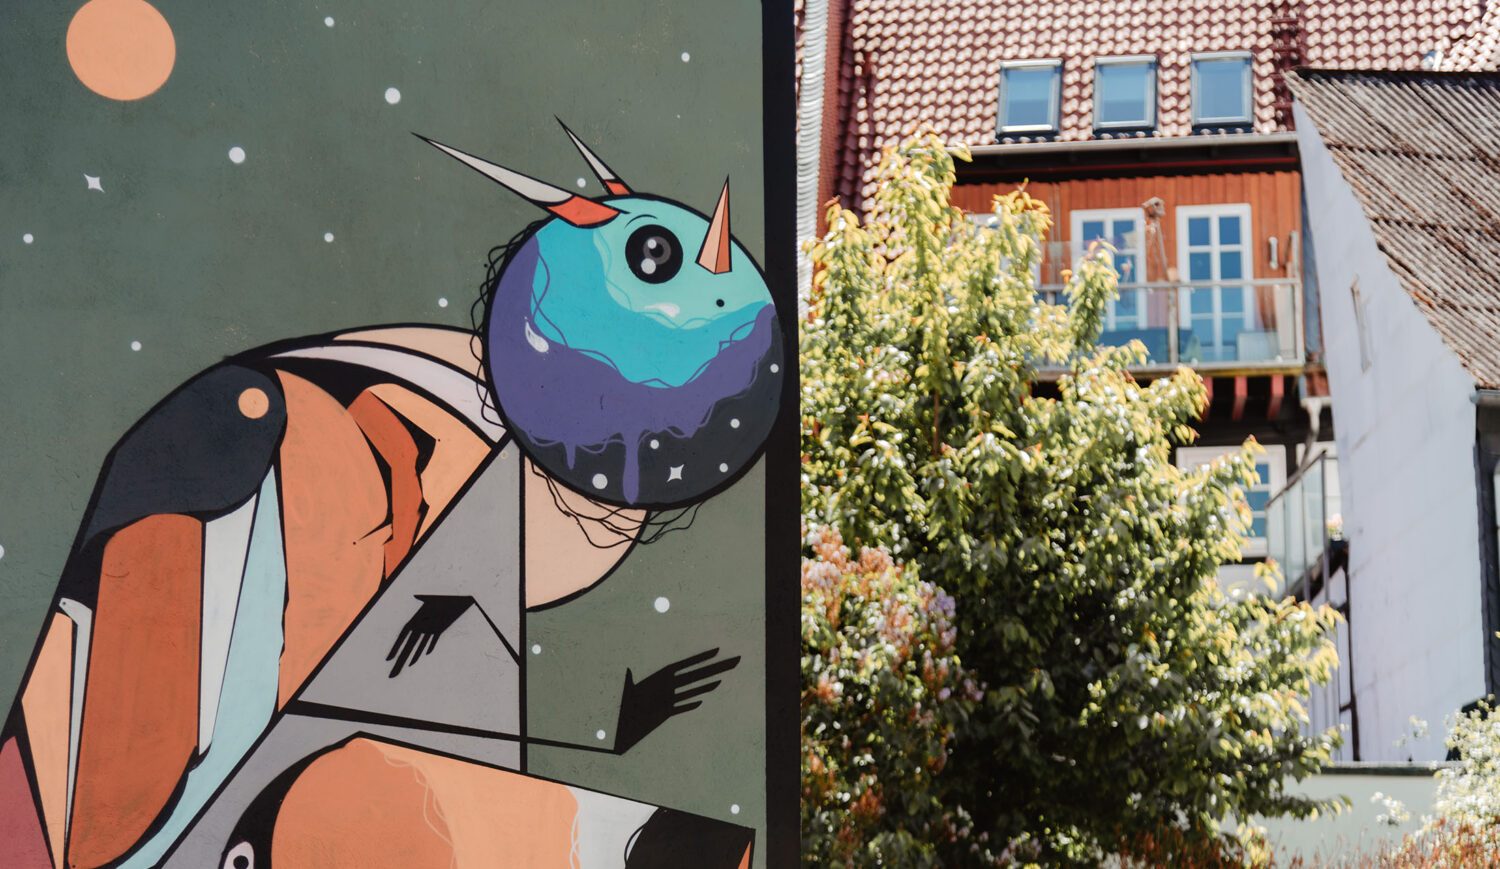 Die Vögel-Murals in einem Hinterhof Einbecks stammen alle vom Leipziger Künstler Bet